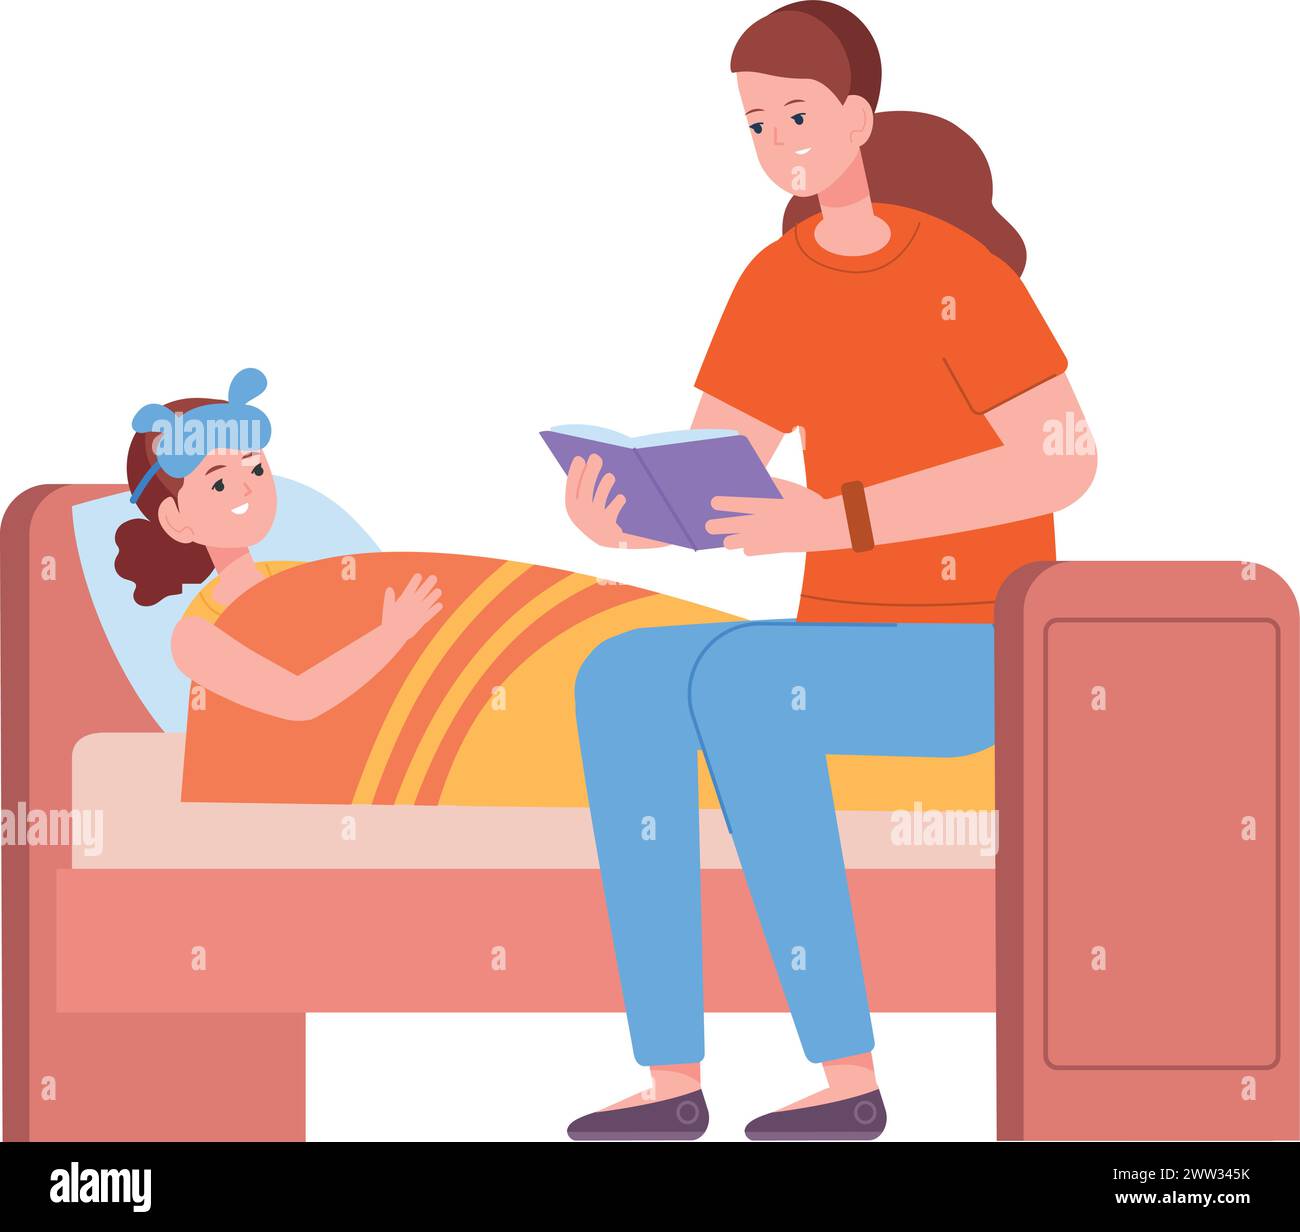 Mutter liest Buch für Kind im Schlafzimmer. Gute-Nacht-Geschichte isoliert auf weißem Hintergrund Stock Vektor